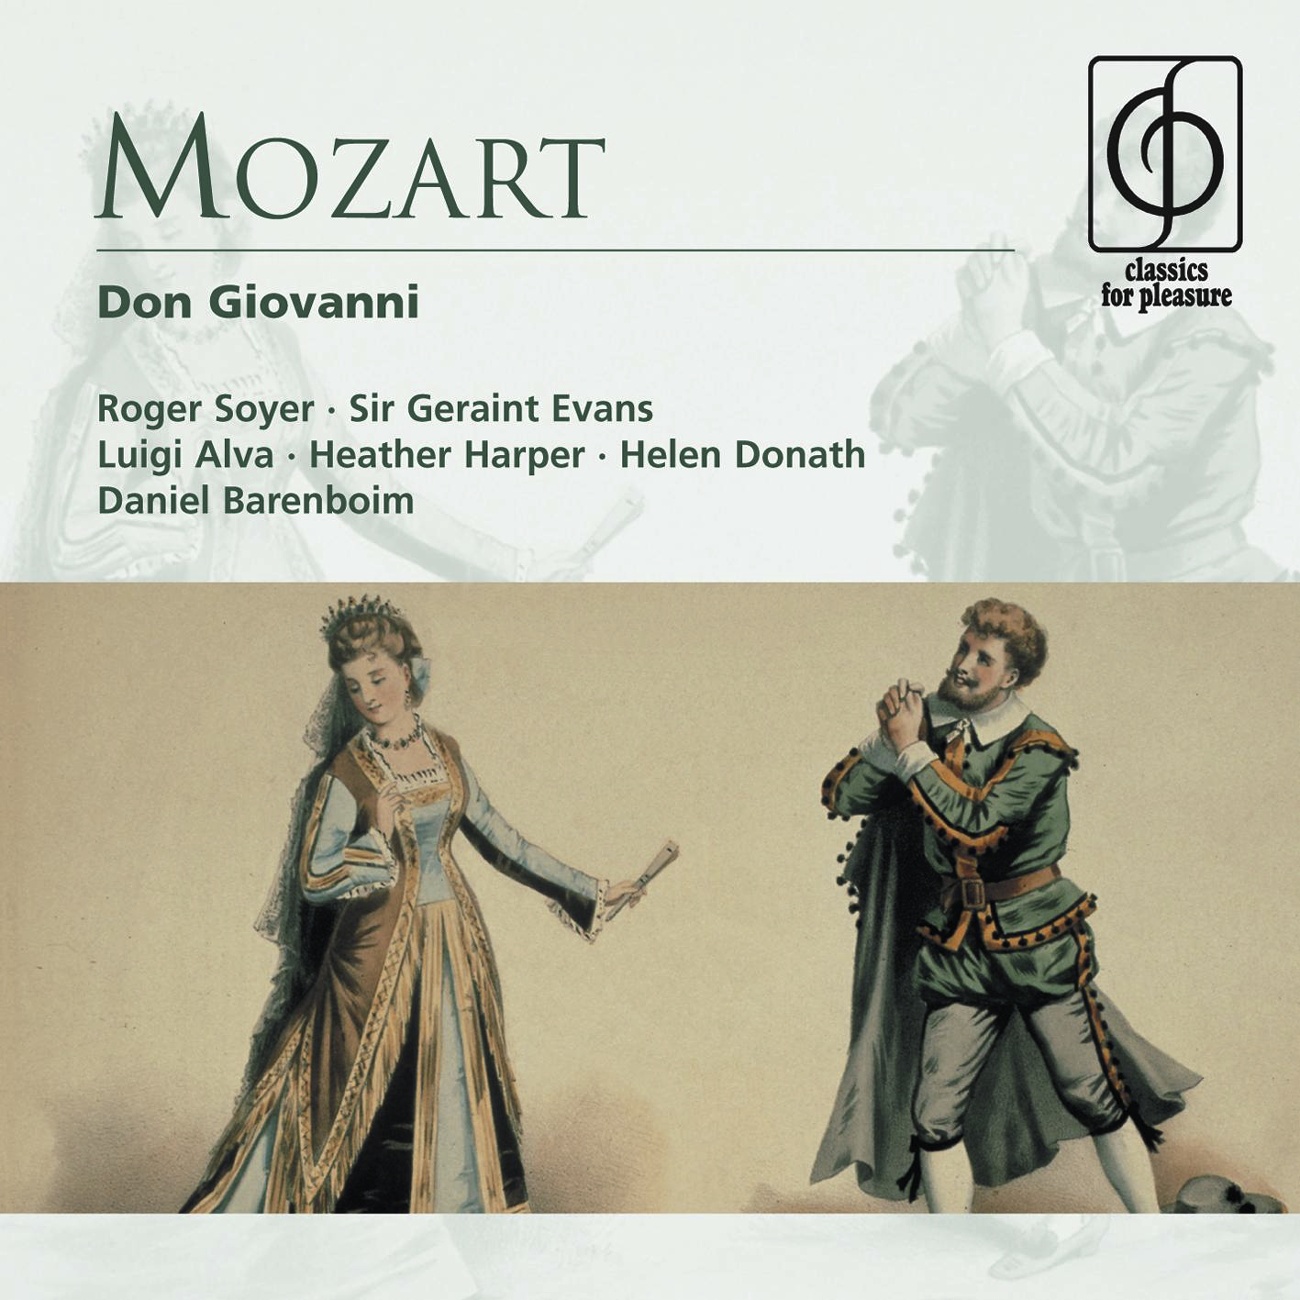 Don Giovanni - Opera in two acts K527 (1991 Digital Remaster), Act II, Scena prima: Vedrai, carino (Zerlina)